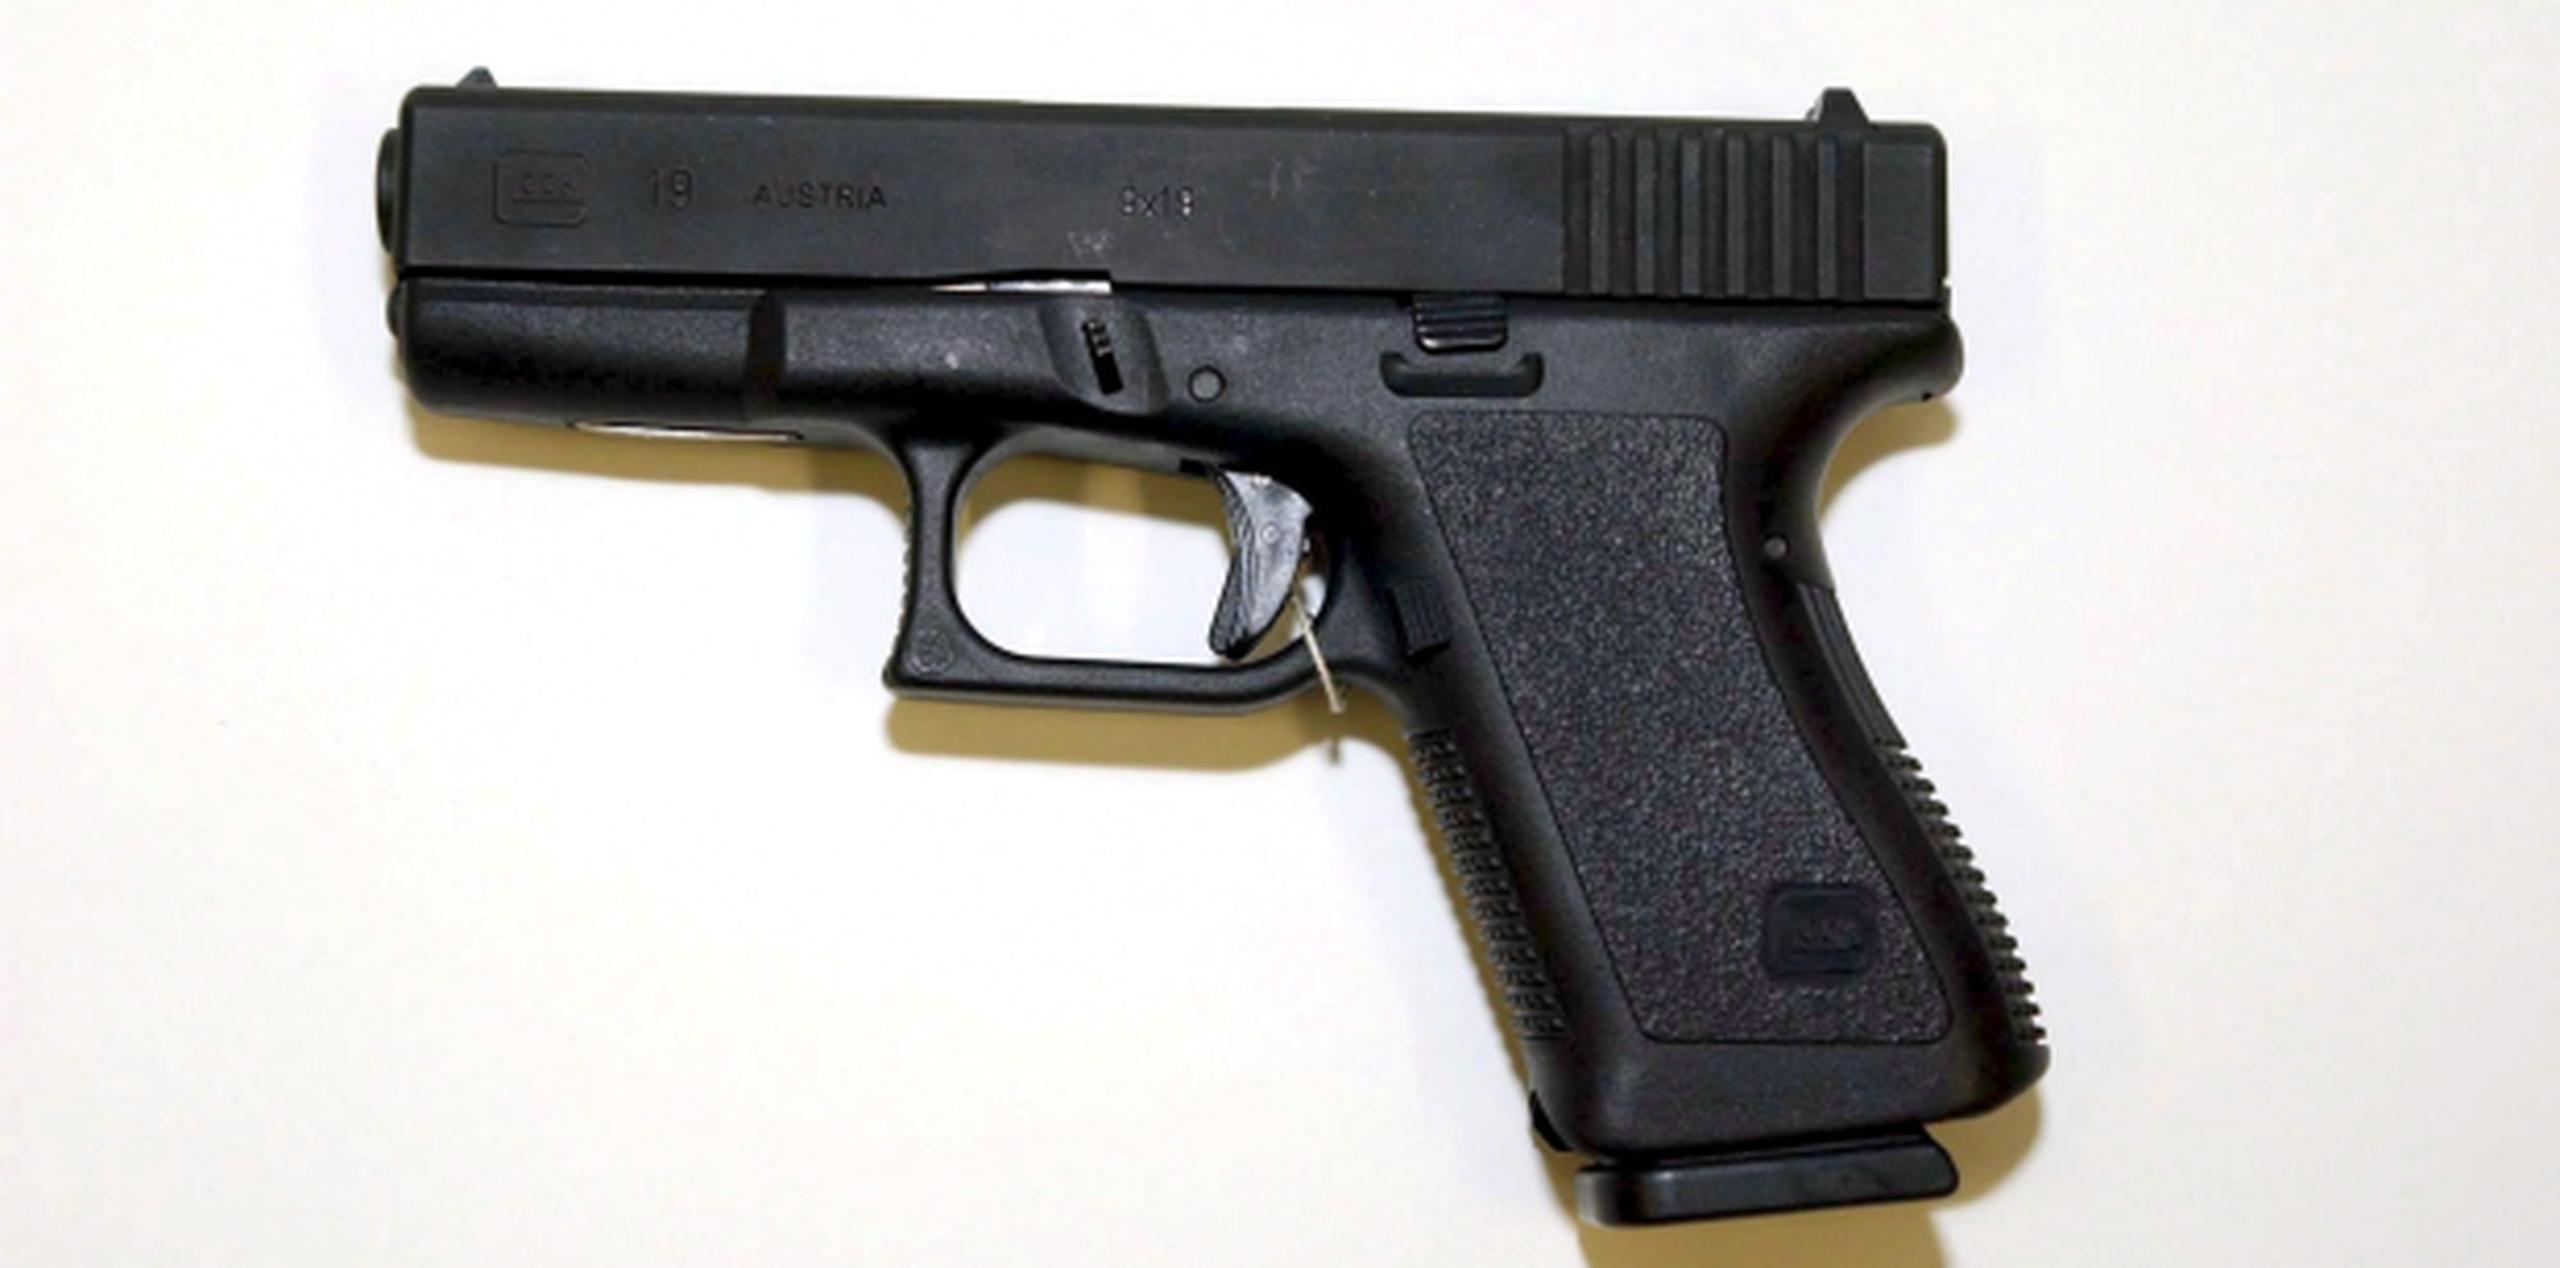 El acusado usó el correo para enviar tres pistolas Glock, en violación de las leyes. (Archivo)